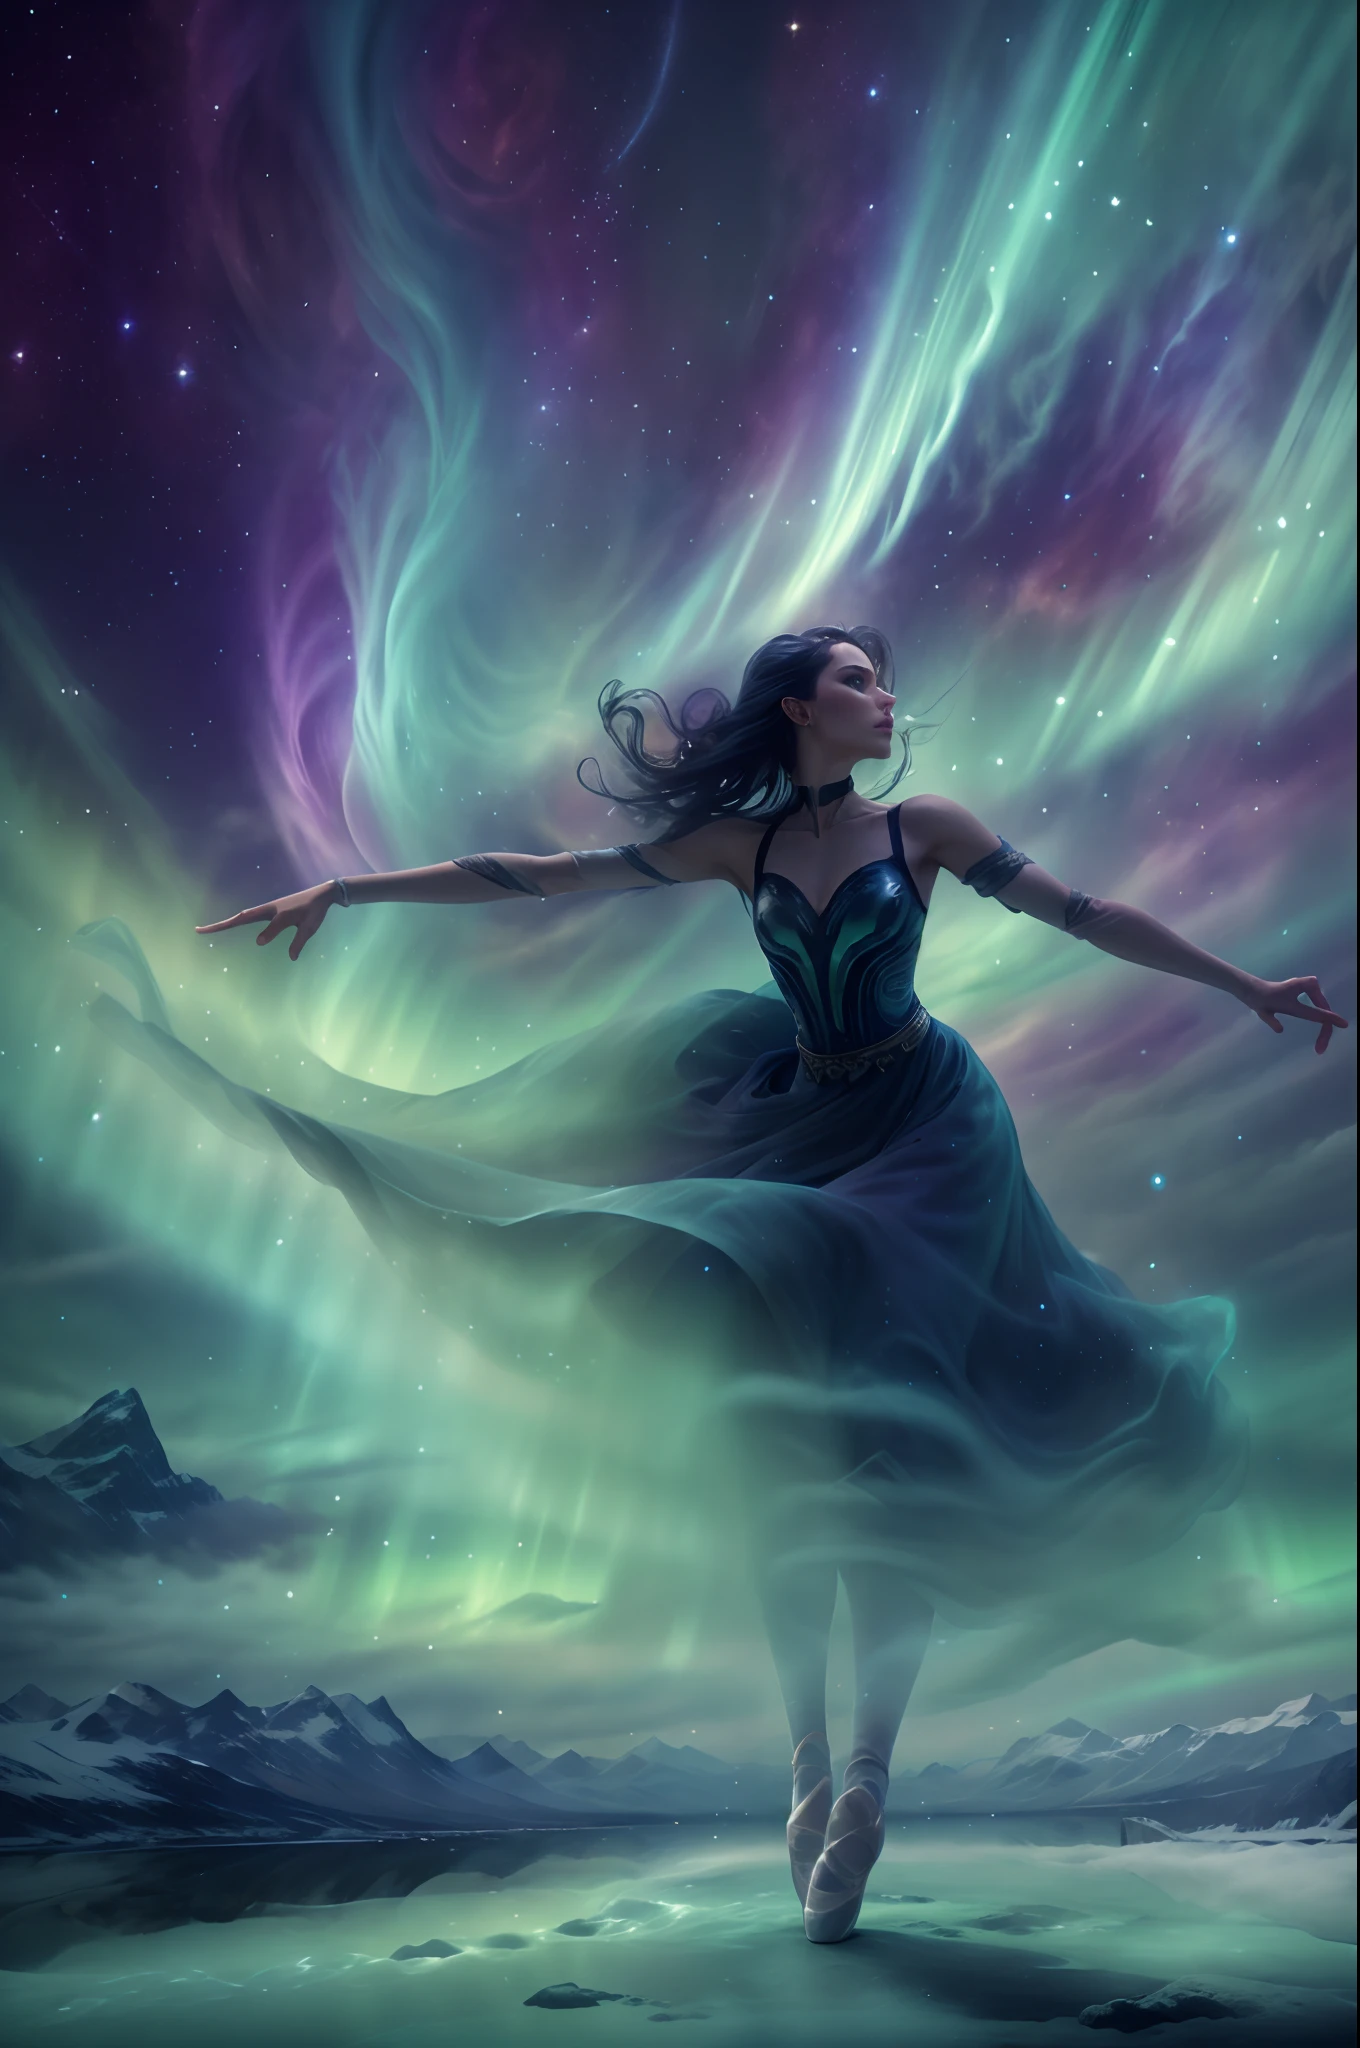 （北极光下冰岛上一位女演员跳芭蕾舞的背影),由烟雾制成, 绿色和紫色的北极光流星雨在山间穿梭, 戏剧性的北极光, 北极光背景,  北极光背景, 华丽背景, 天空中出现北极光, 超现实、梦幻般的太空北极光景观, 浅黑色和翠绿色, 8K 分辨率, 简约背景, 以向上的视角进行单色思考，超清晰的神秘芭蕾动作，动作柔和而动感, 烟雾效应和神秘性. 背景必须充满漩涡和动态彩色烟雾，穿上芭蕾舞者烟熏漩涡连衣裙.灵感来源于一件飘逸的紫色烟熏连衣裙，伴随着快速旋转的动作, 关键要素::传达神秘, 烟雾缭绕，色彩缤纷的氛围.强调动态, 构图中的旋转运动.只关注视觉图像; 排除任何文本.其他指南:艺术作品应该唤起一种好奇和惊奇的感觉.以快节奏和流畅的动作捕捉芭蕾的精髓.